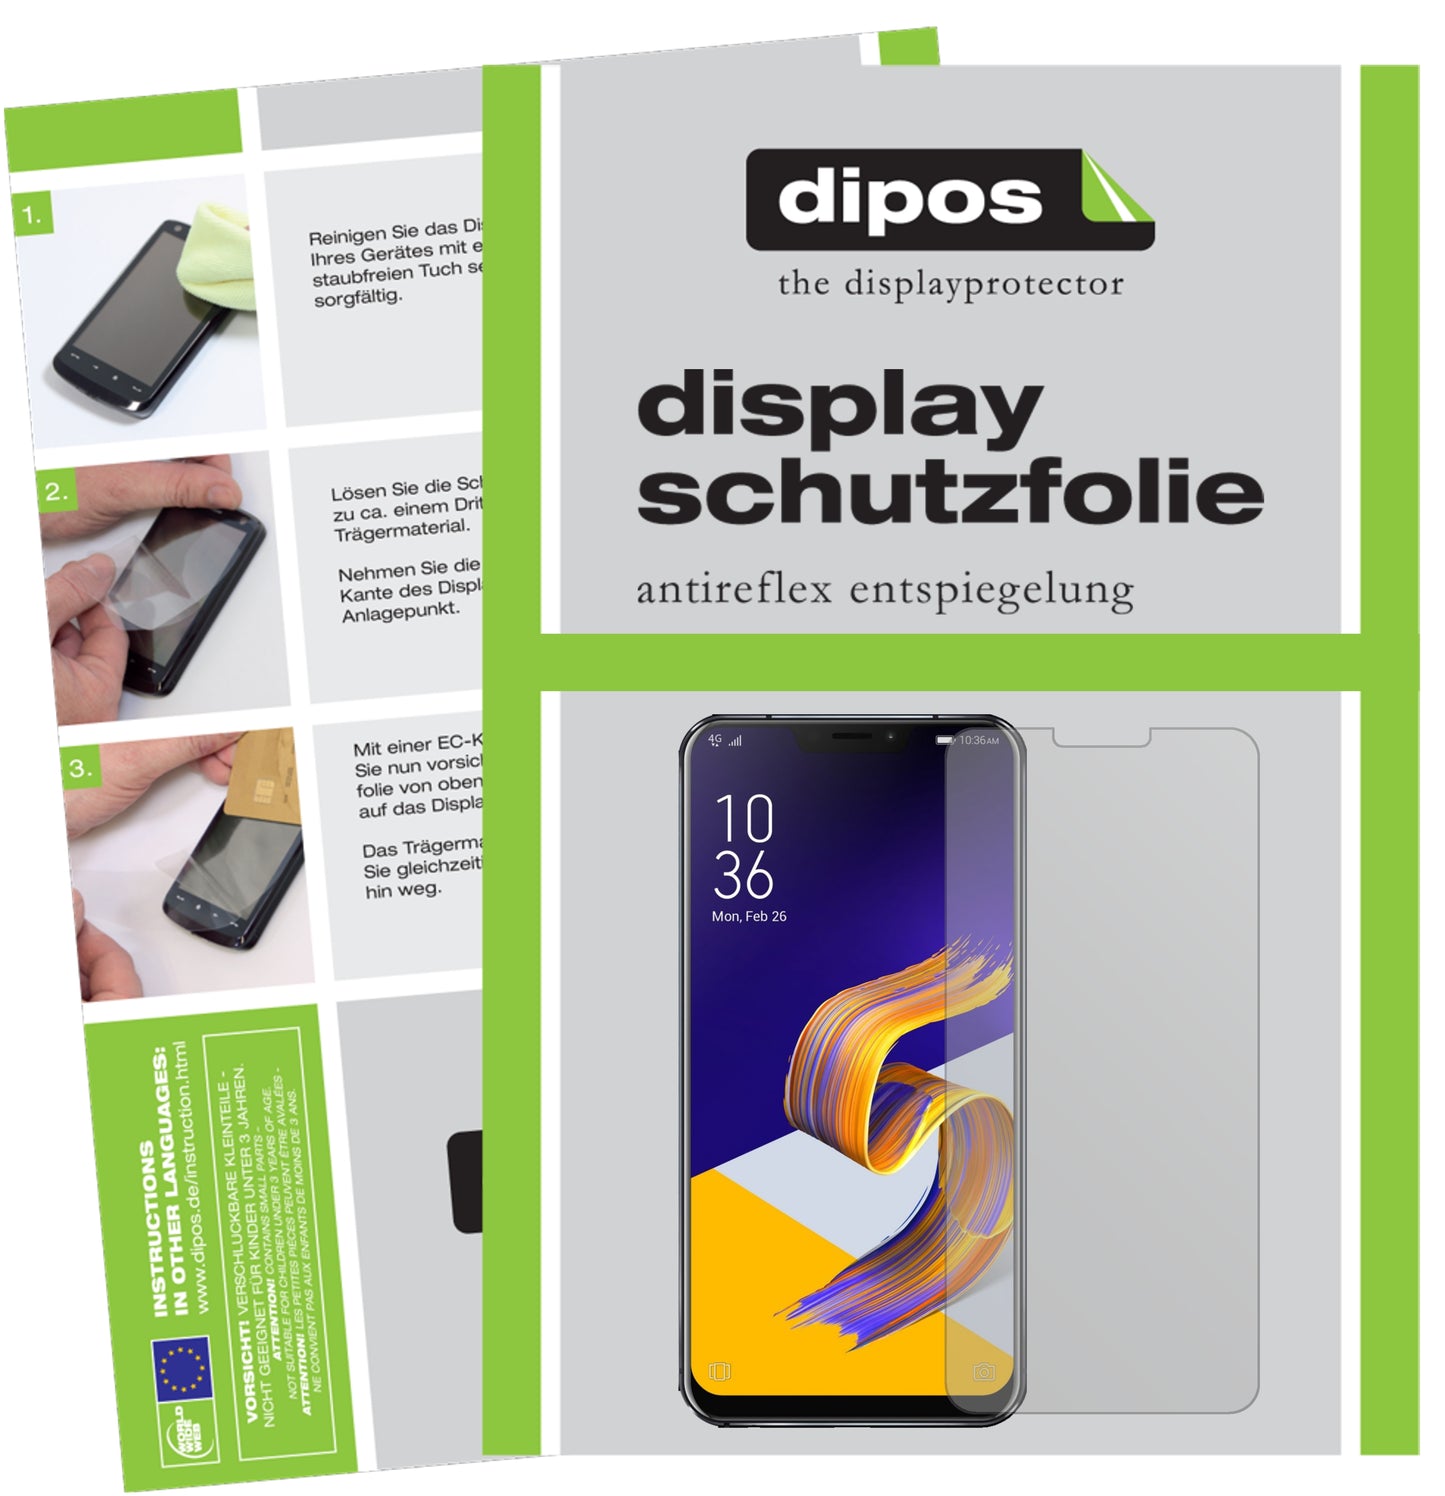 Mattes Panzerglas: Entspiegelte, dünne Folie, Fingerabdruckresistenz und Bildschirmschutz für Asus-Zenfone 5Z ZS620KL